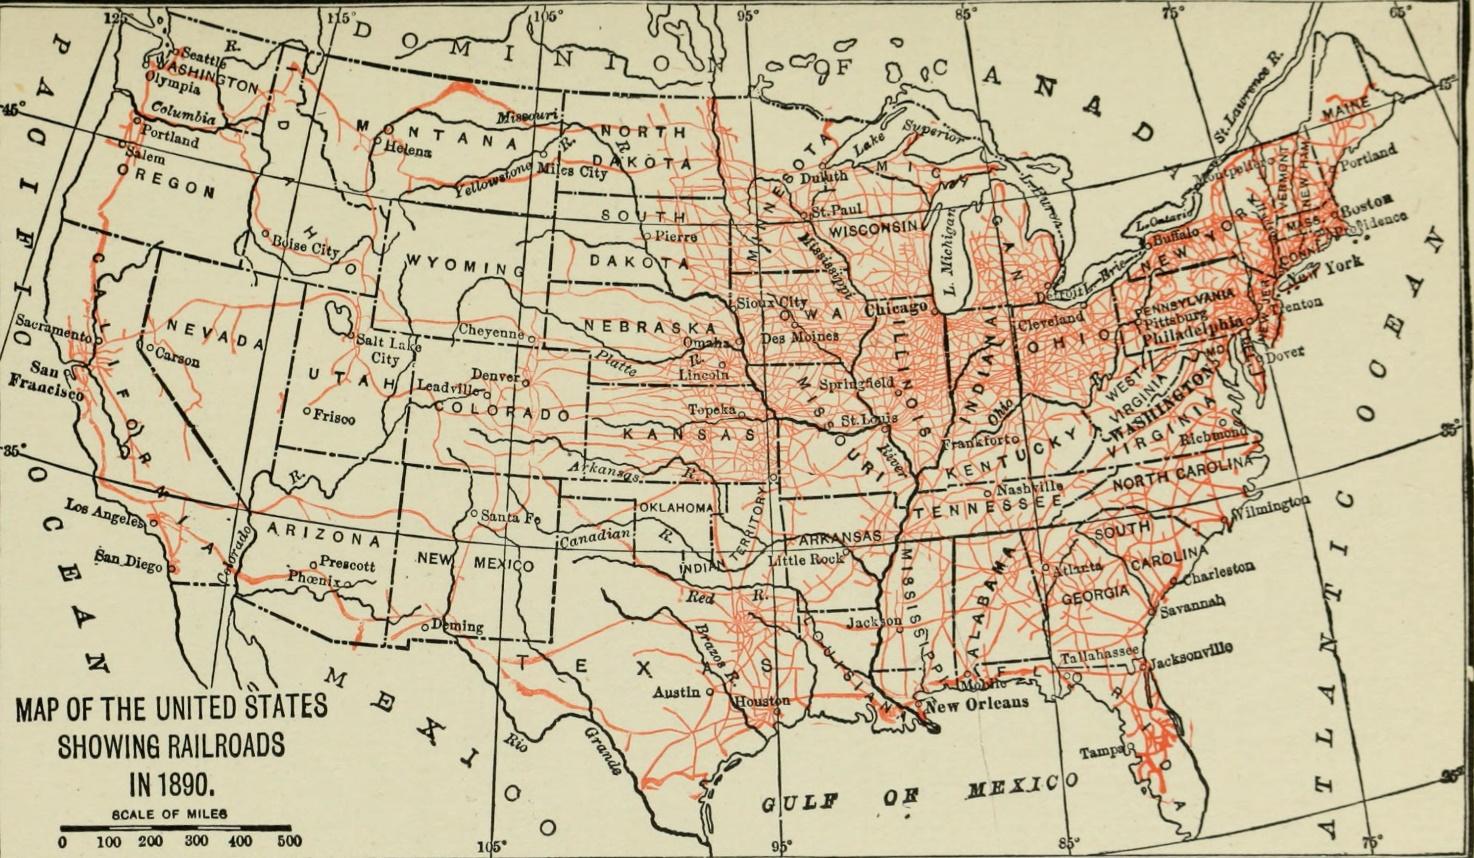 Railroads in 1890